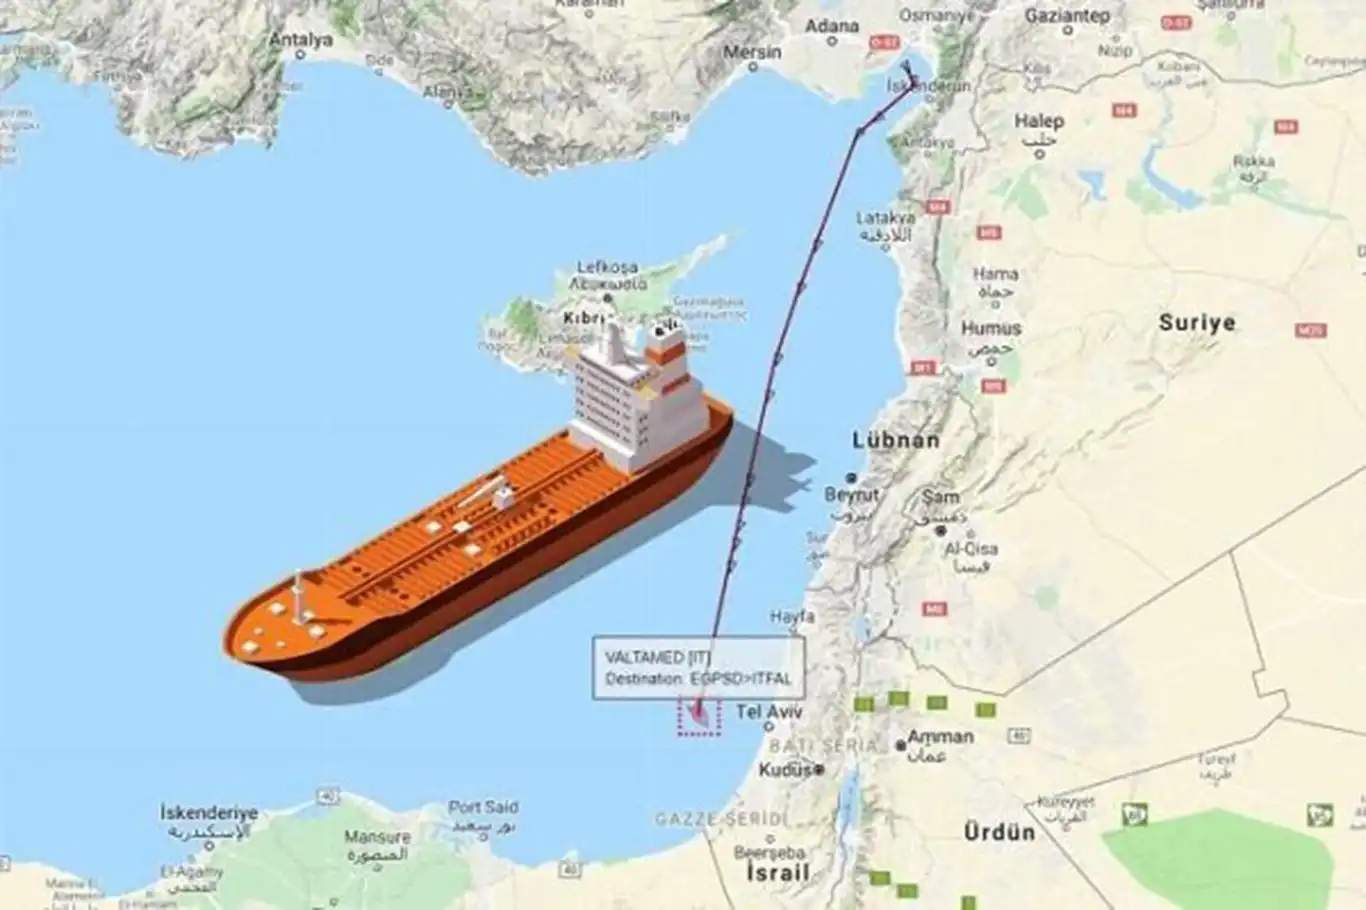 Azerbaycan petrolünün, siyonist rejime Türkiye üzerinden gönderildiği iddiası